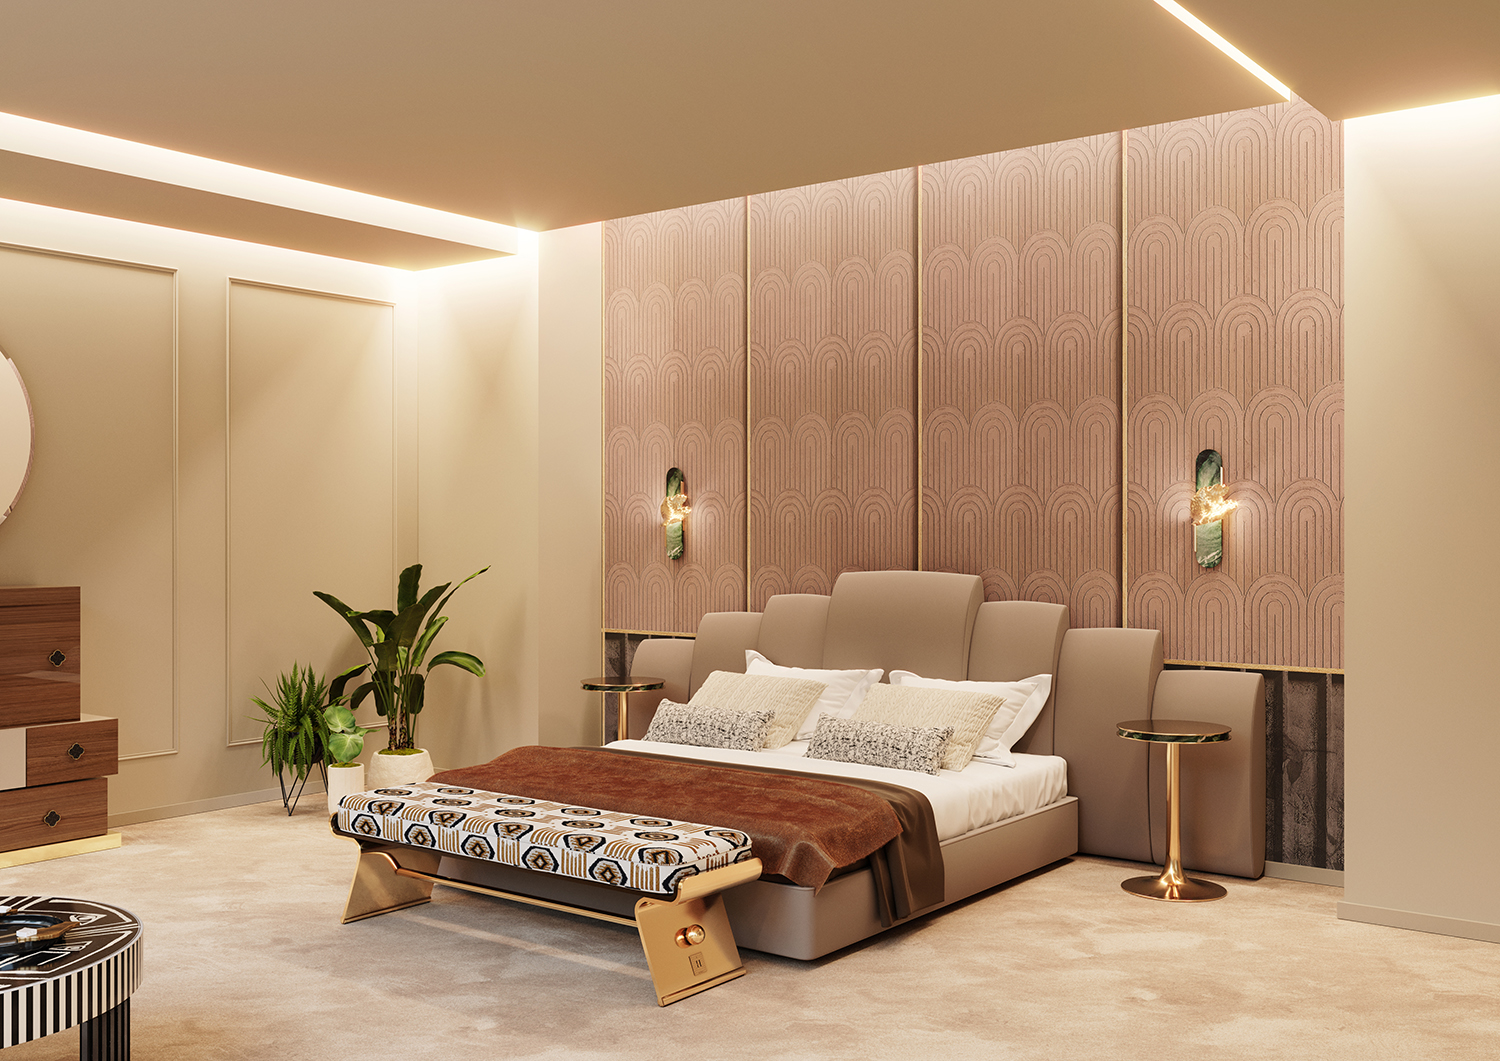 Bedroom Interior Design Collection - By Hommés Studio | Hommés Studio